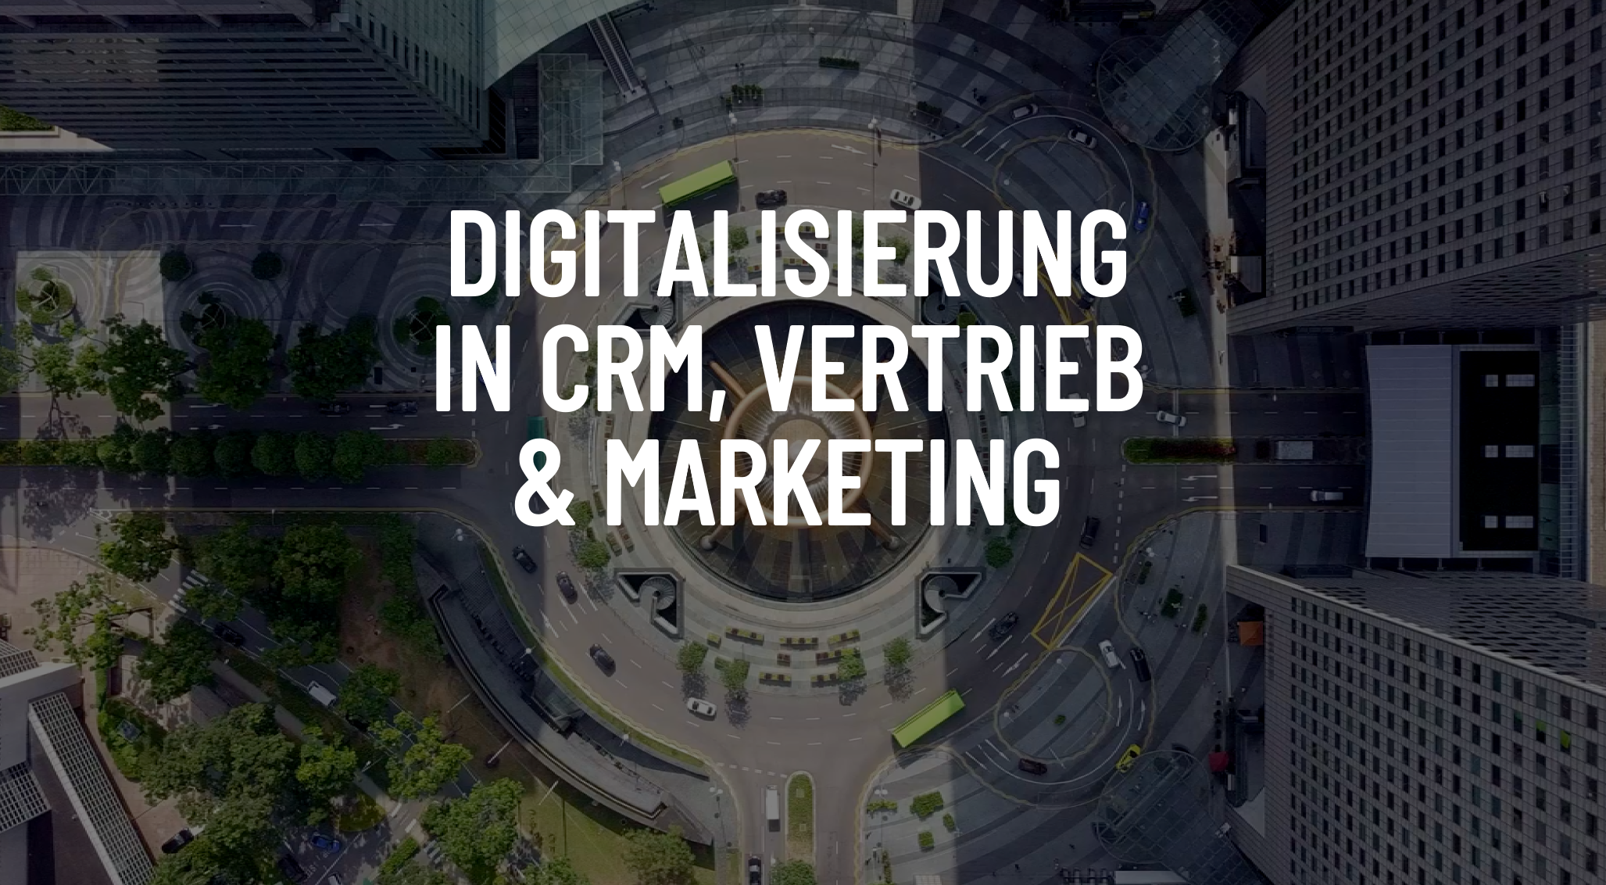 udo als Customer Data Plattform zur Digitalisierung von CRM, Vertrieb und Marketing